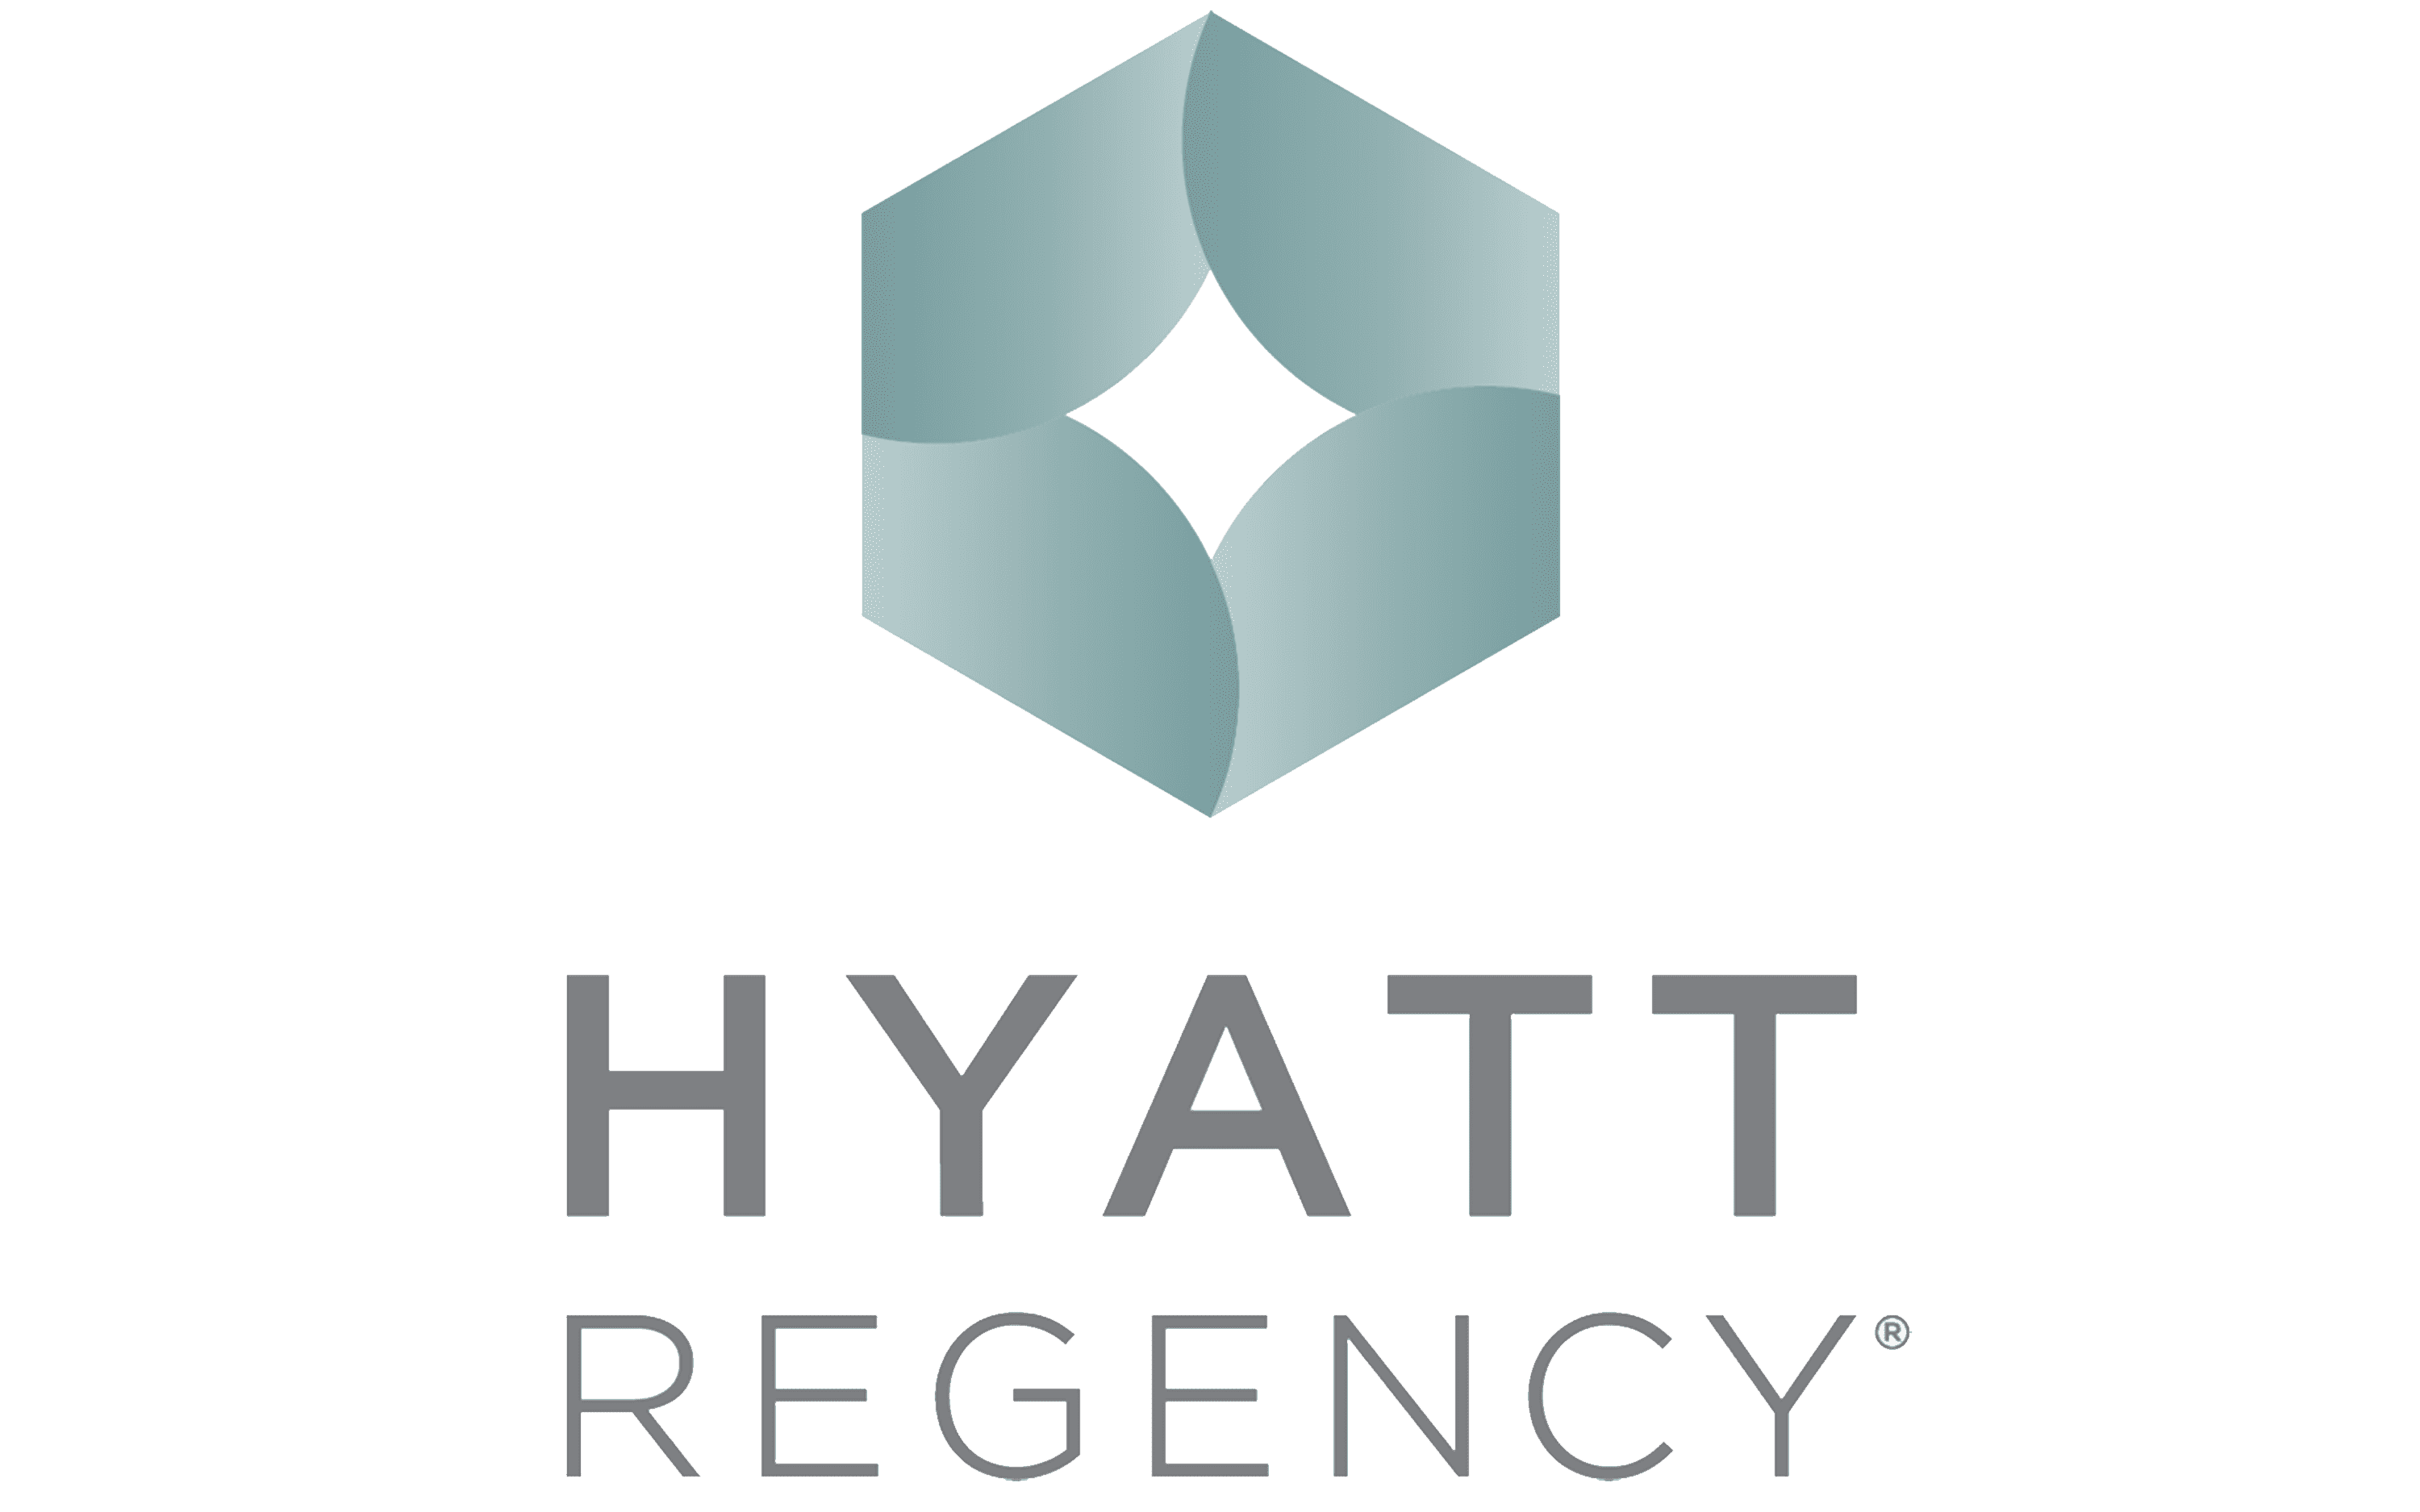 Hyatt Regency Atlanta 40th Anniversary by Lindsay Boseman, via Behance | Hyatt  regency, Hyatt, 40th anniversary